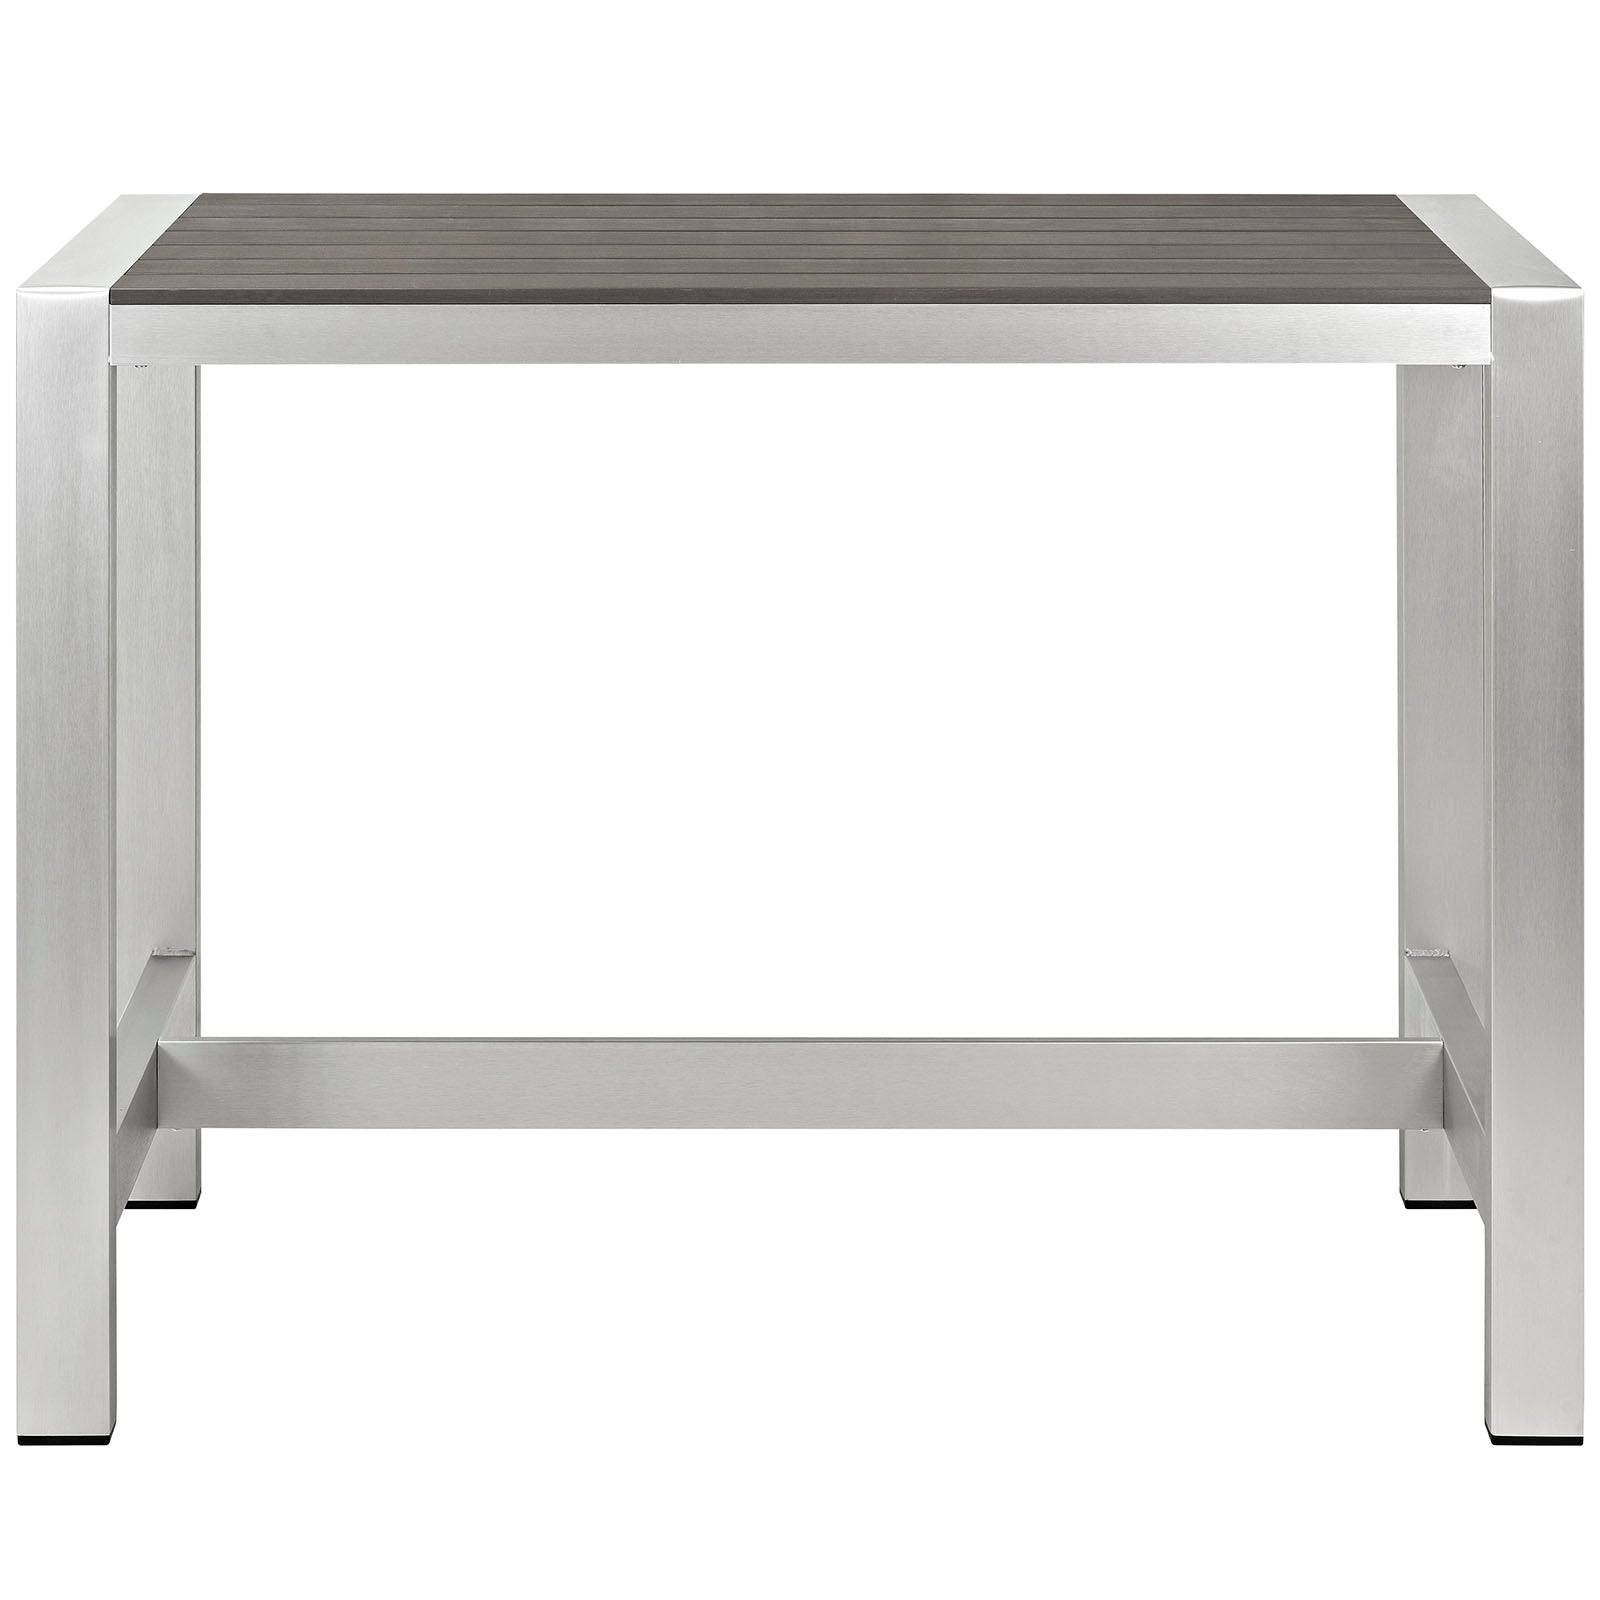 Modway Outdoor Bar Tables - Shore Outdoor Rectangle Bar Table Silver & Gray